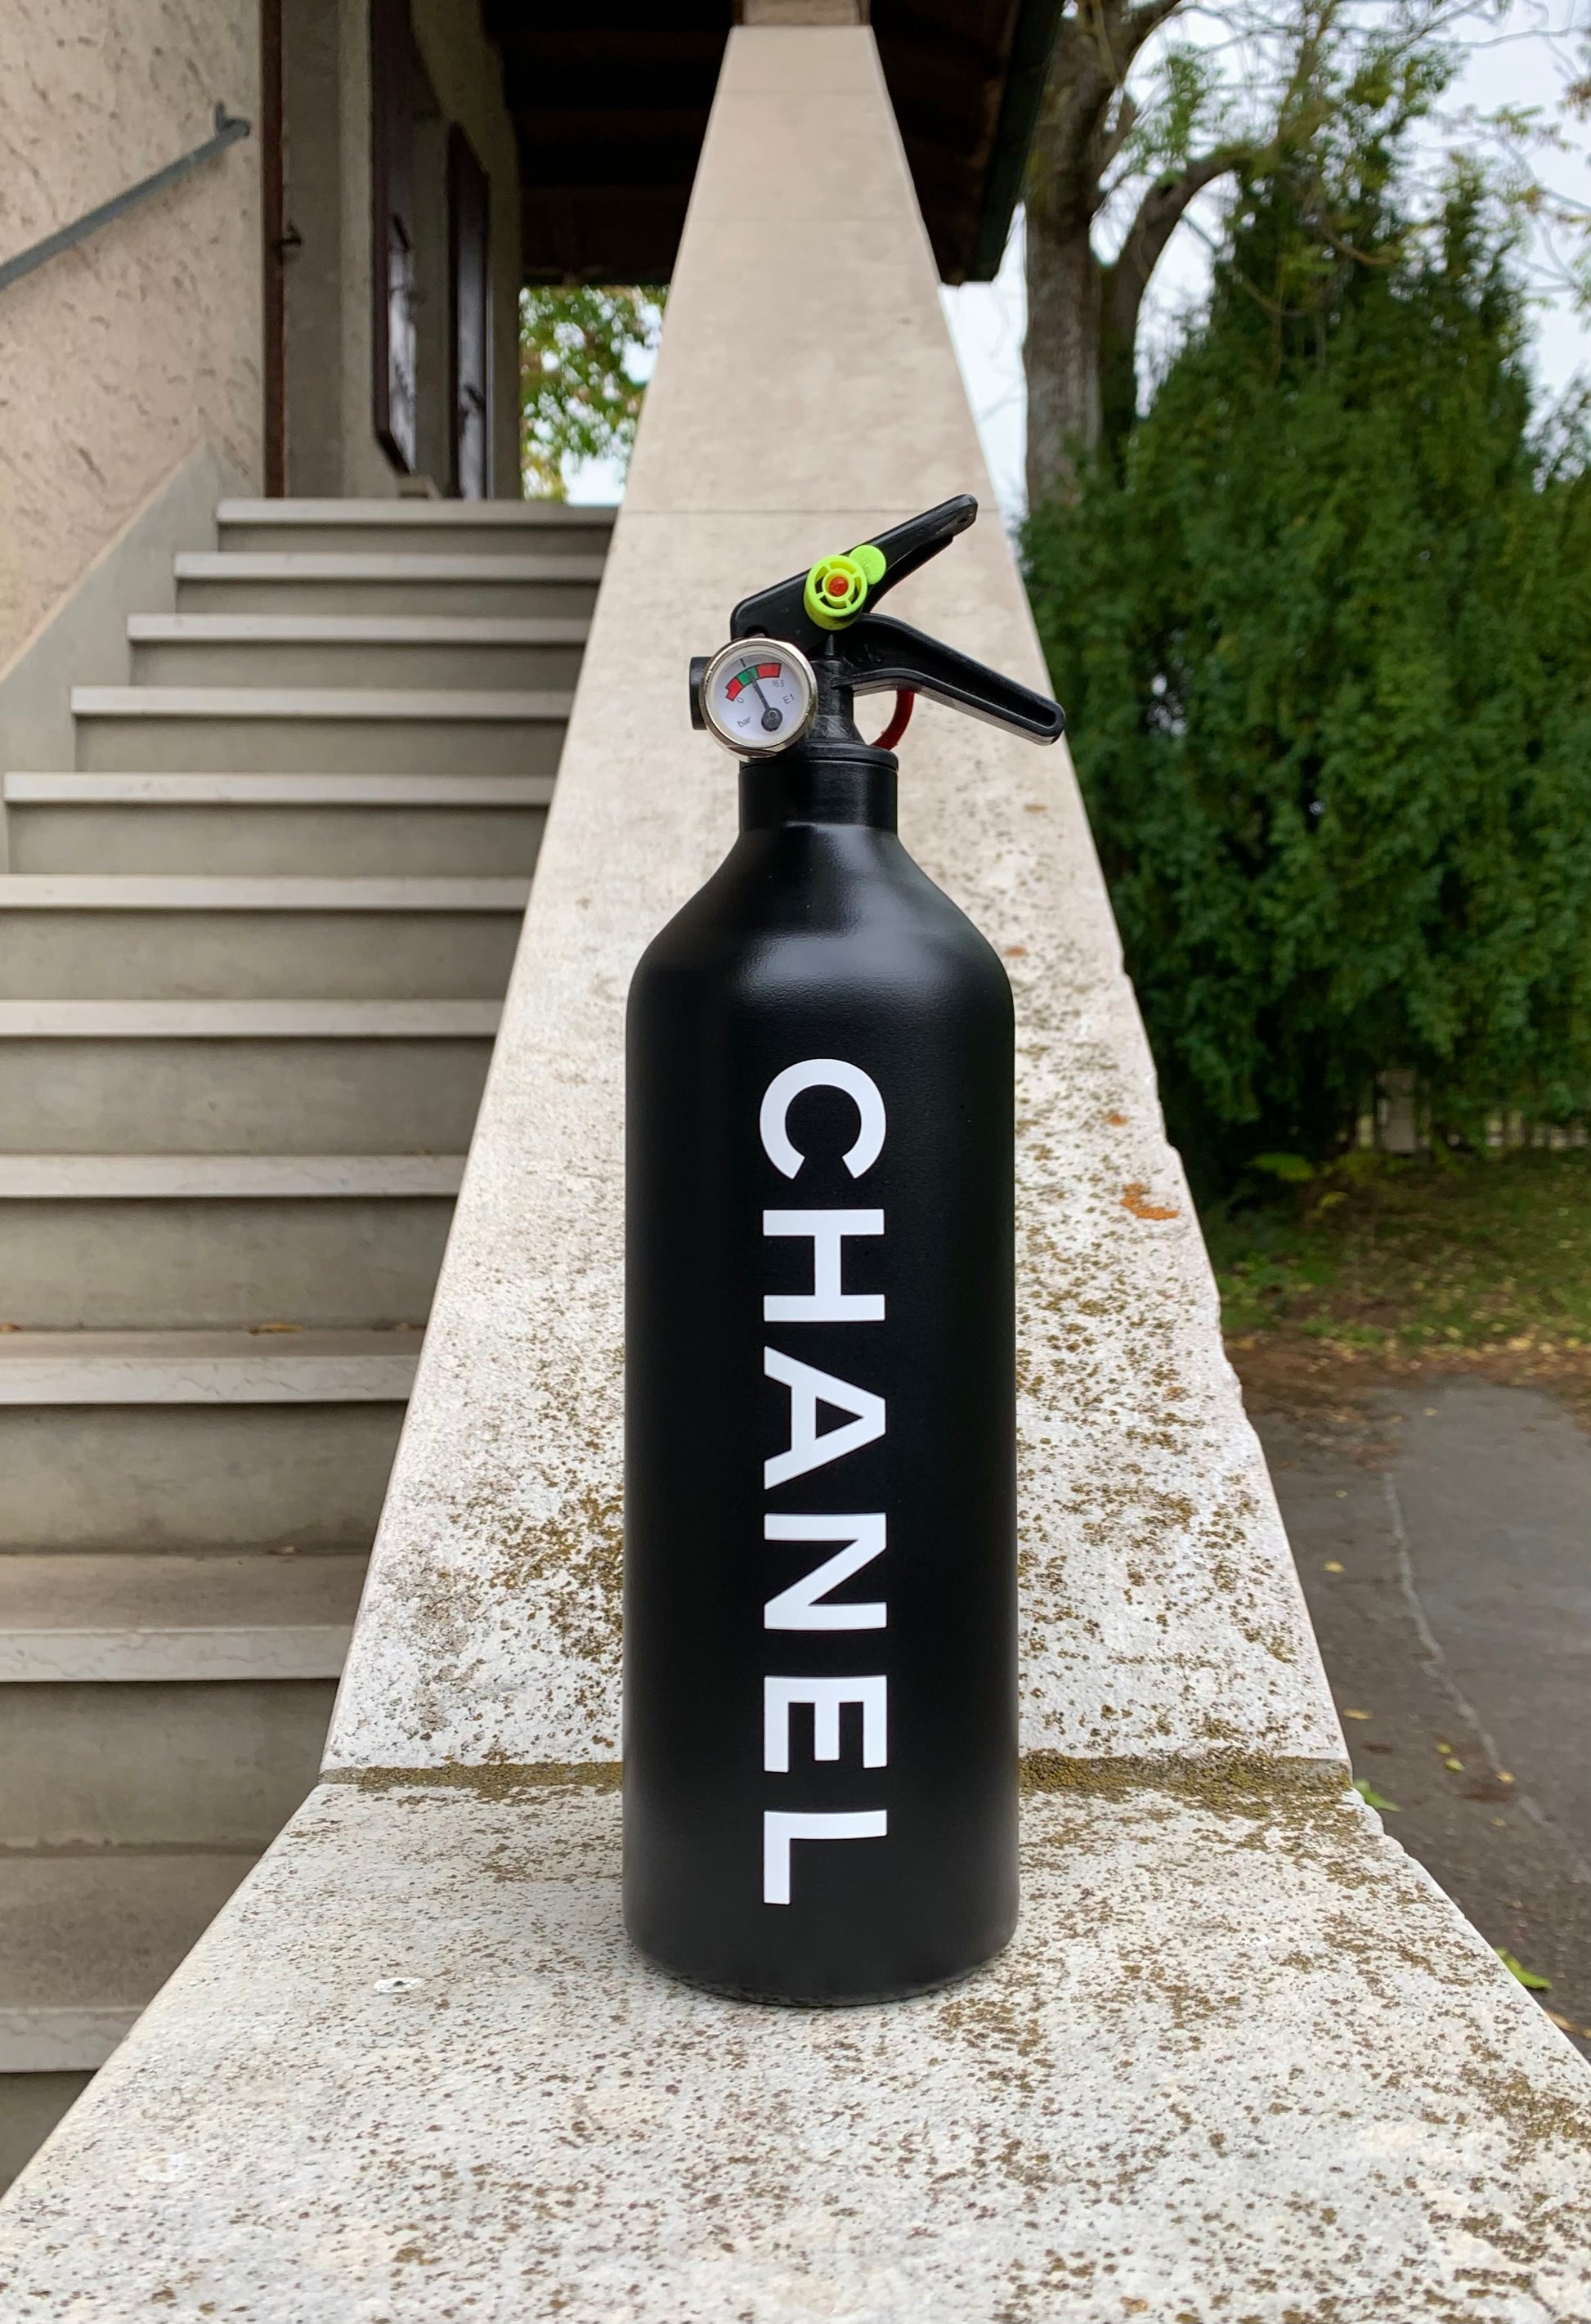 extinguisher Chanel atelier s1ple